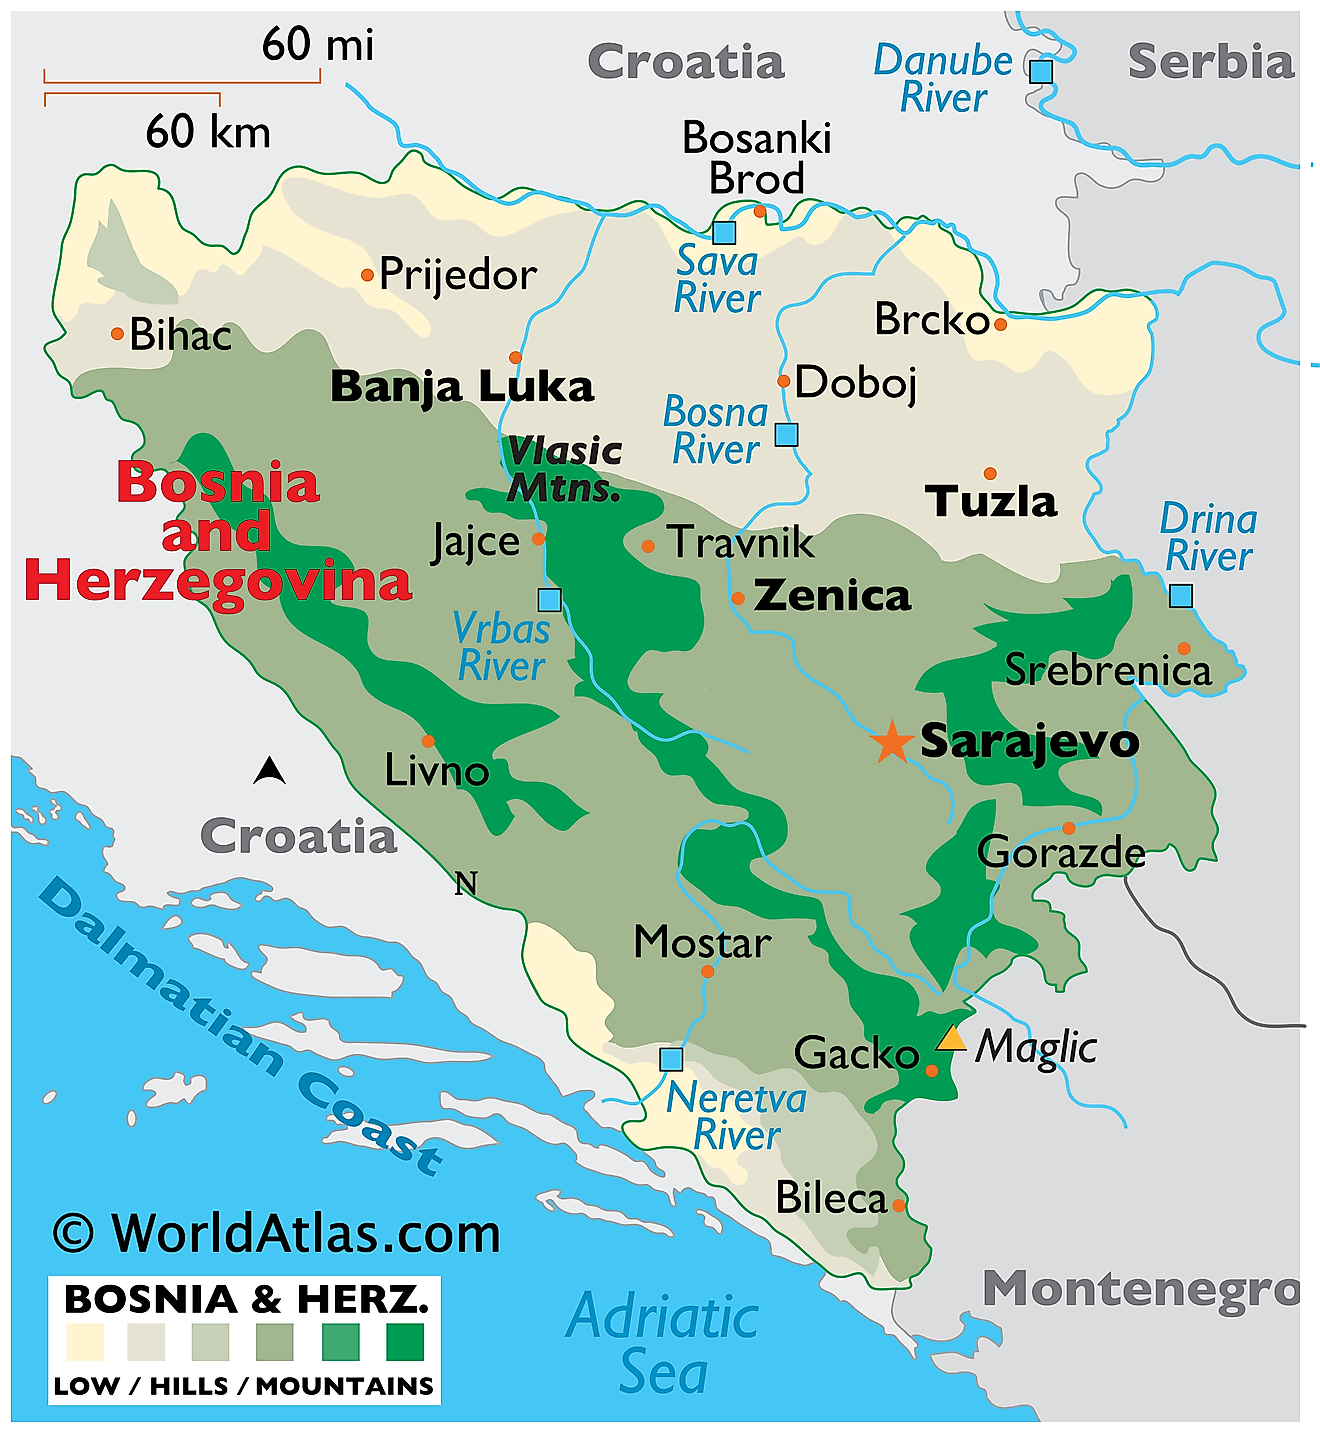 Mapa Físico de Bosnia y Herzegovina. Muestra las características físicas de Bosnia y Herzegovina, incluidas sus cadenas montañosas y sus principales ríos.